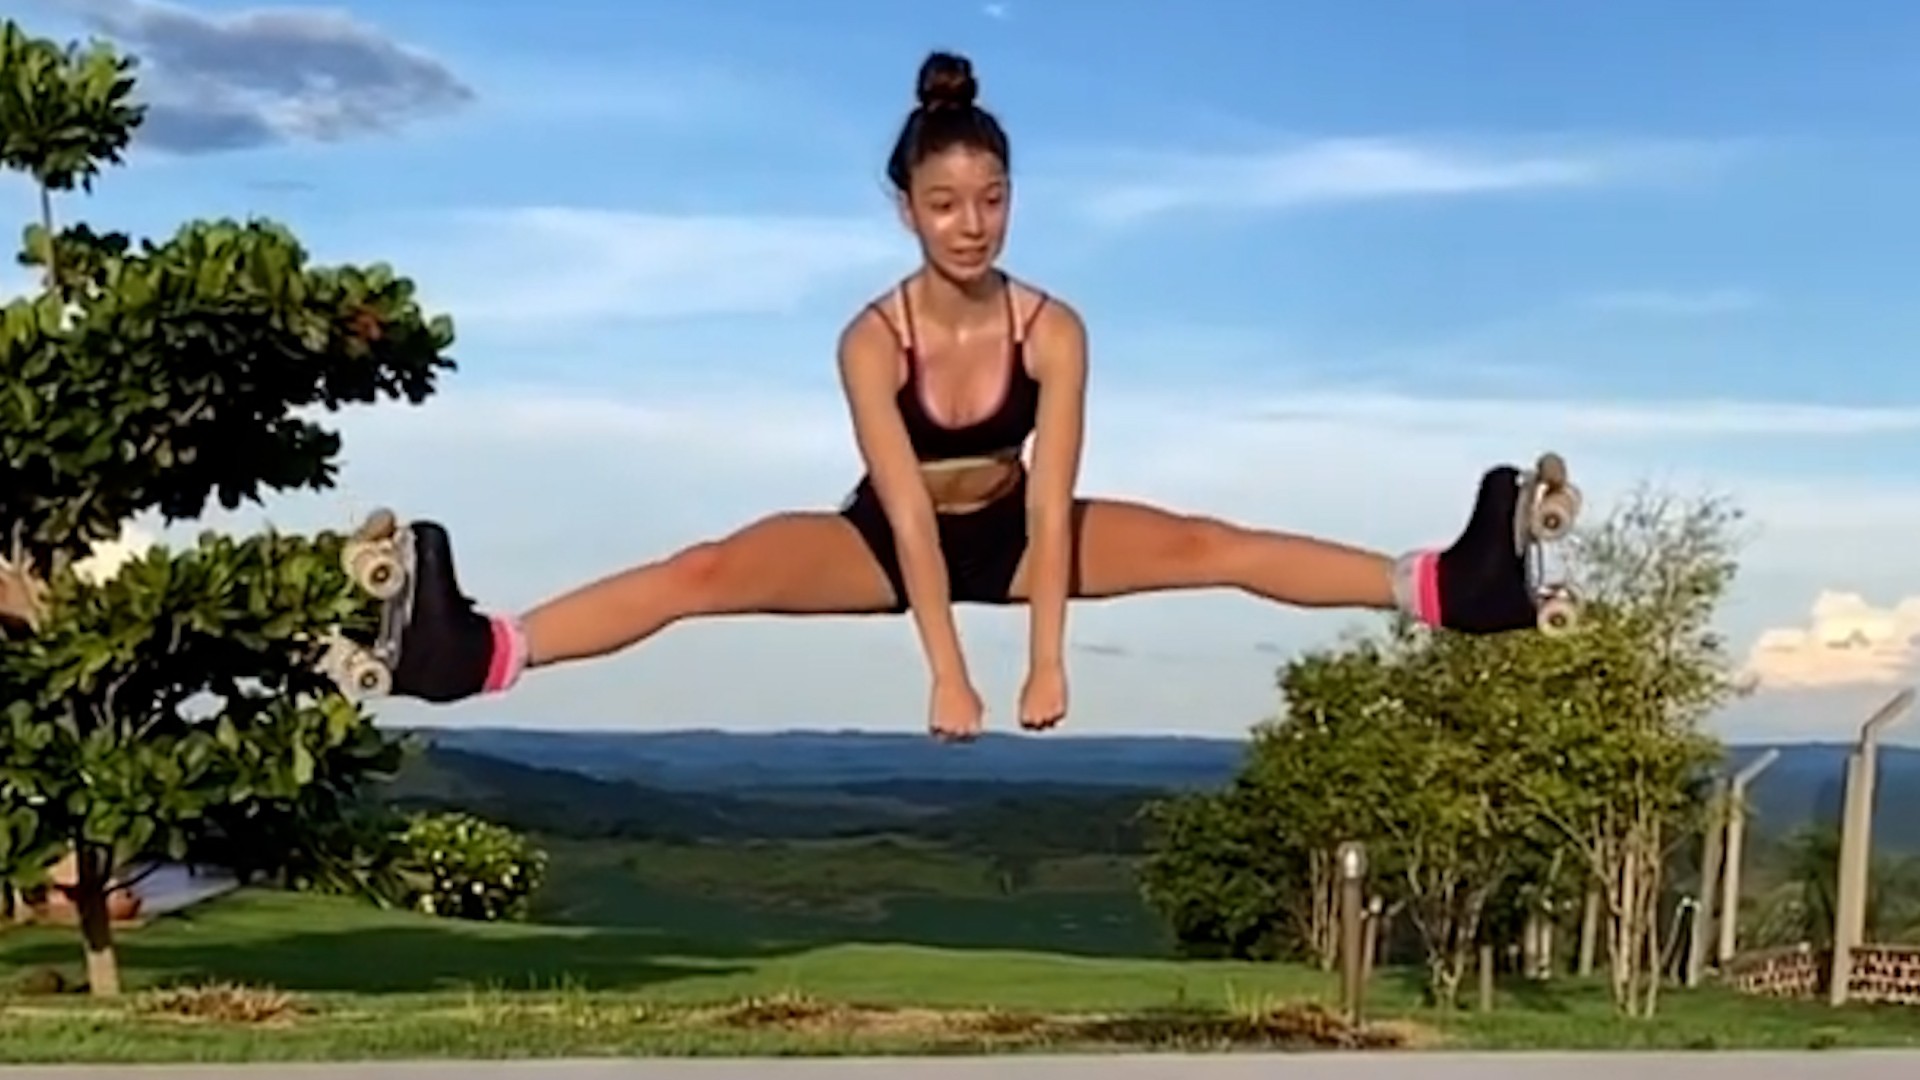 Јулија е гимнастичарка на роншули: Погледнете како прави шпага во воздух и тоа додека се движи